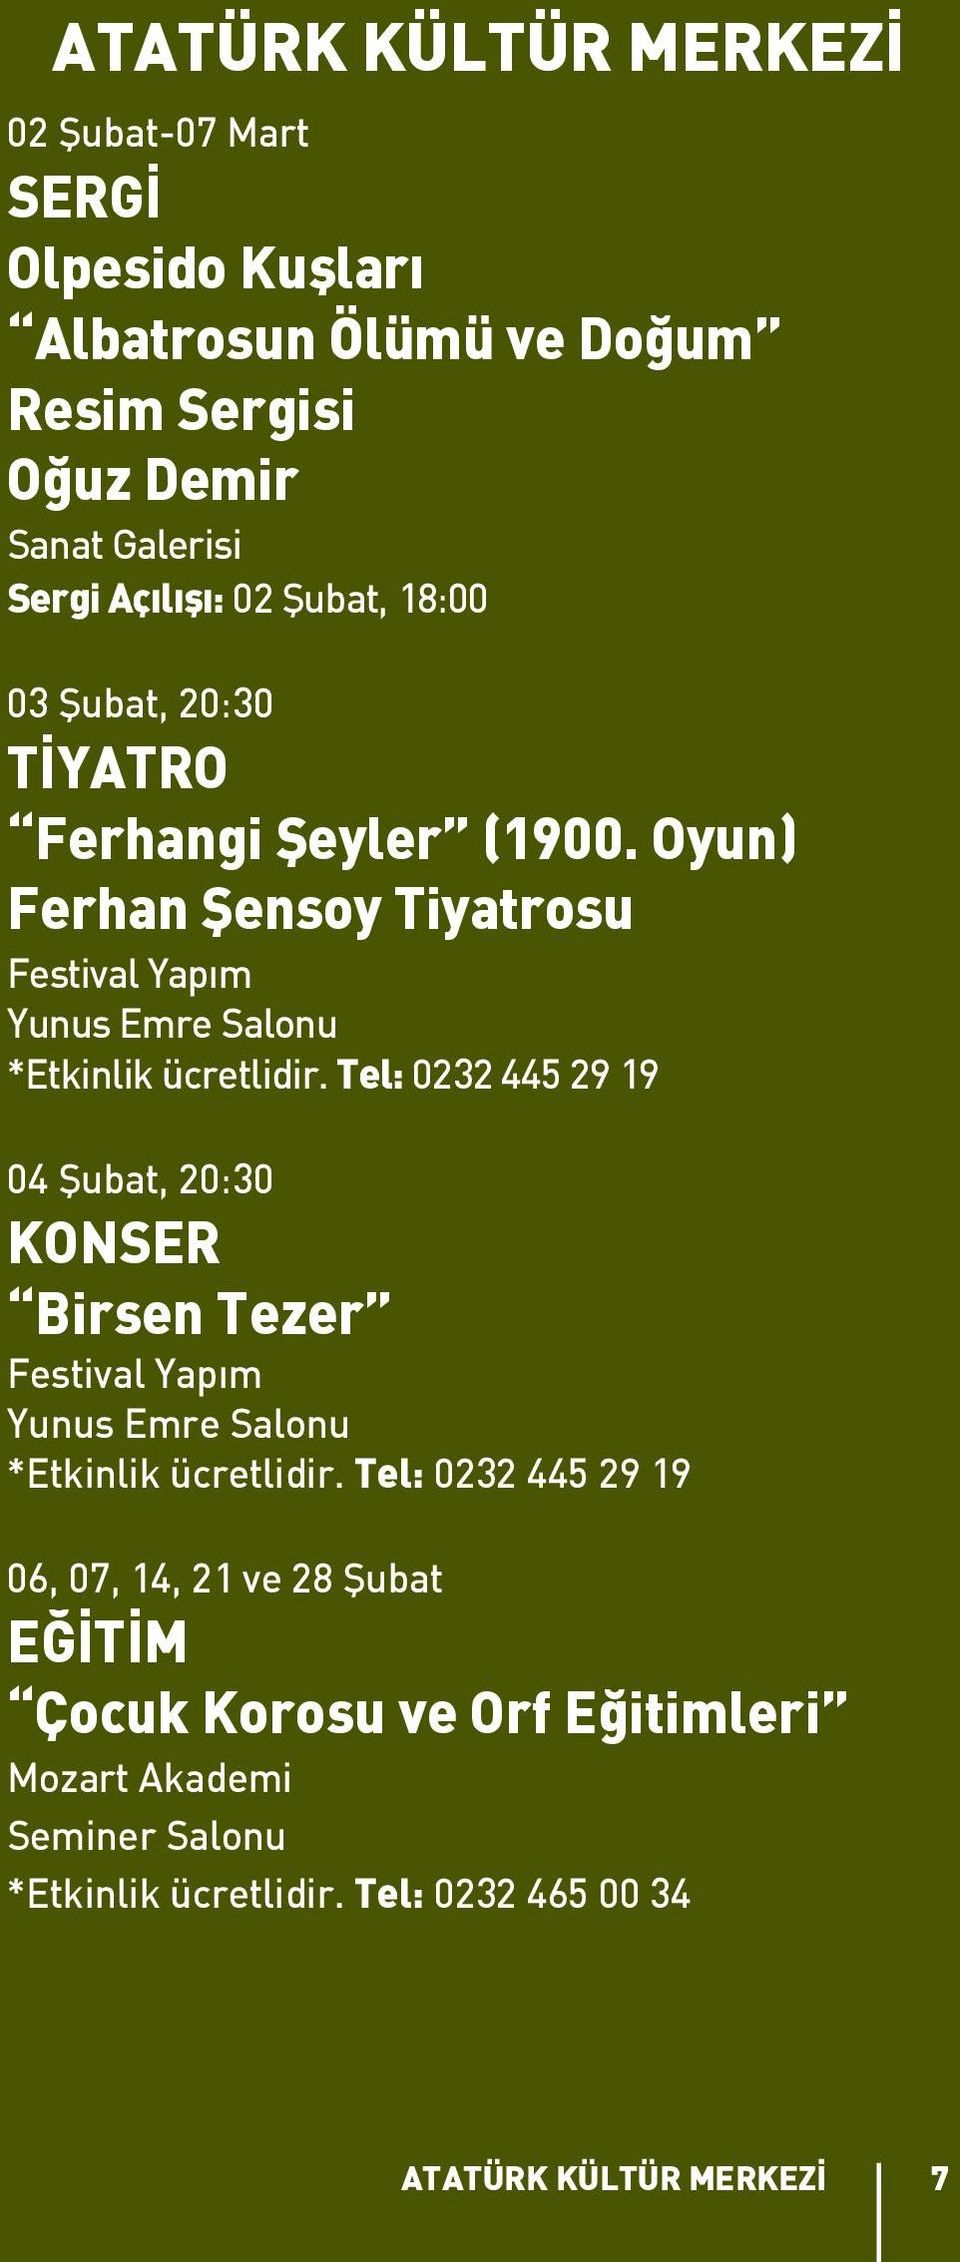 Oyun) Ferhan Şensoy Tiyatrosu Festival Yapım Yunus Emre Salonu *Etkinlik ücretlidir.